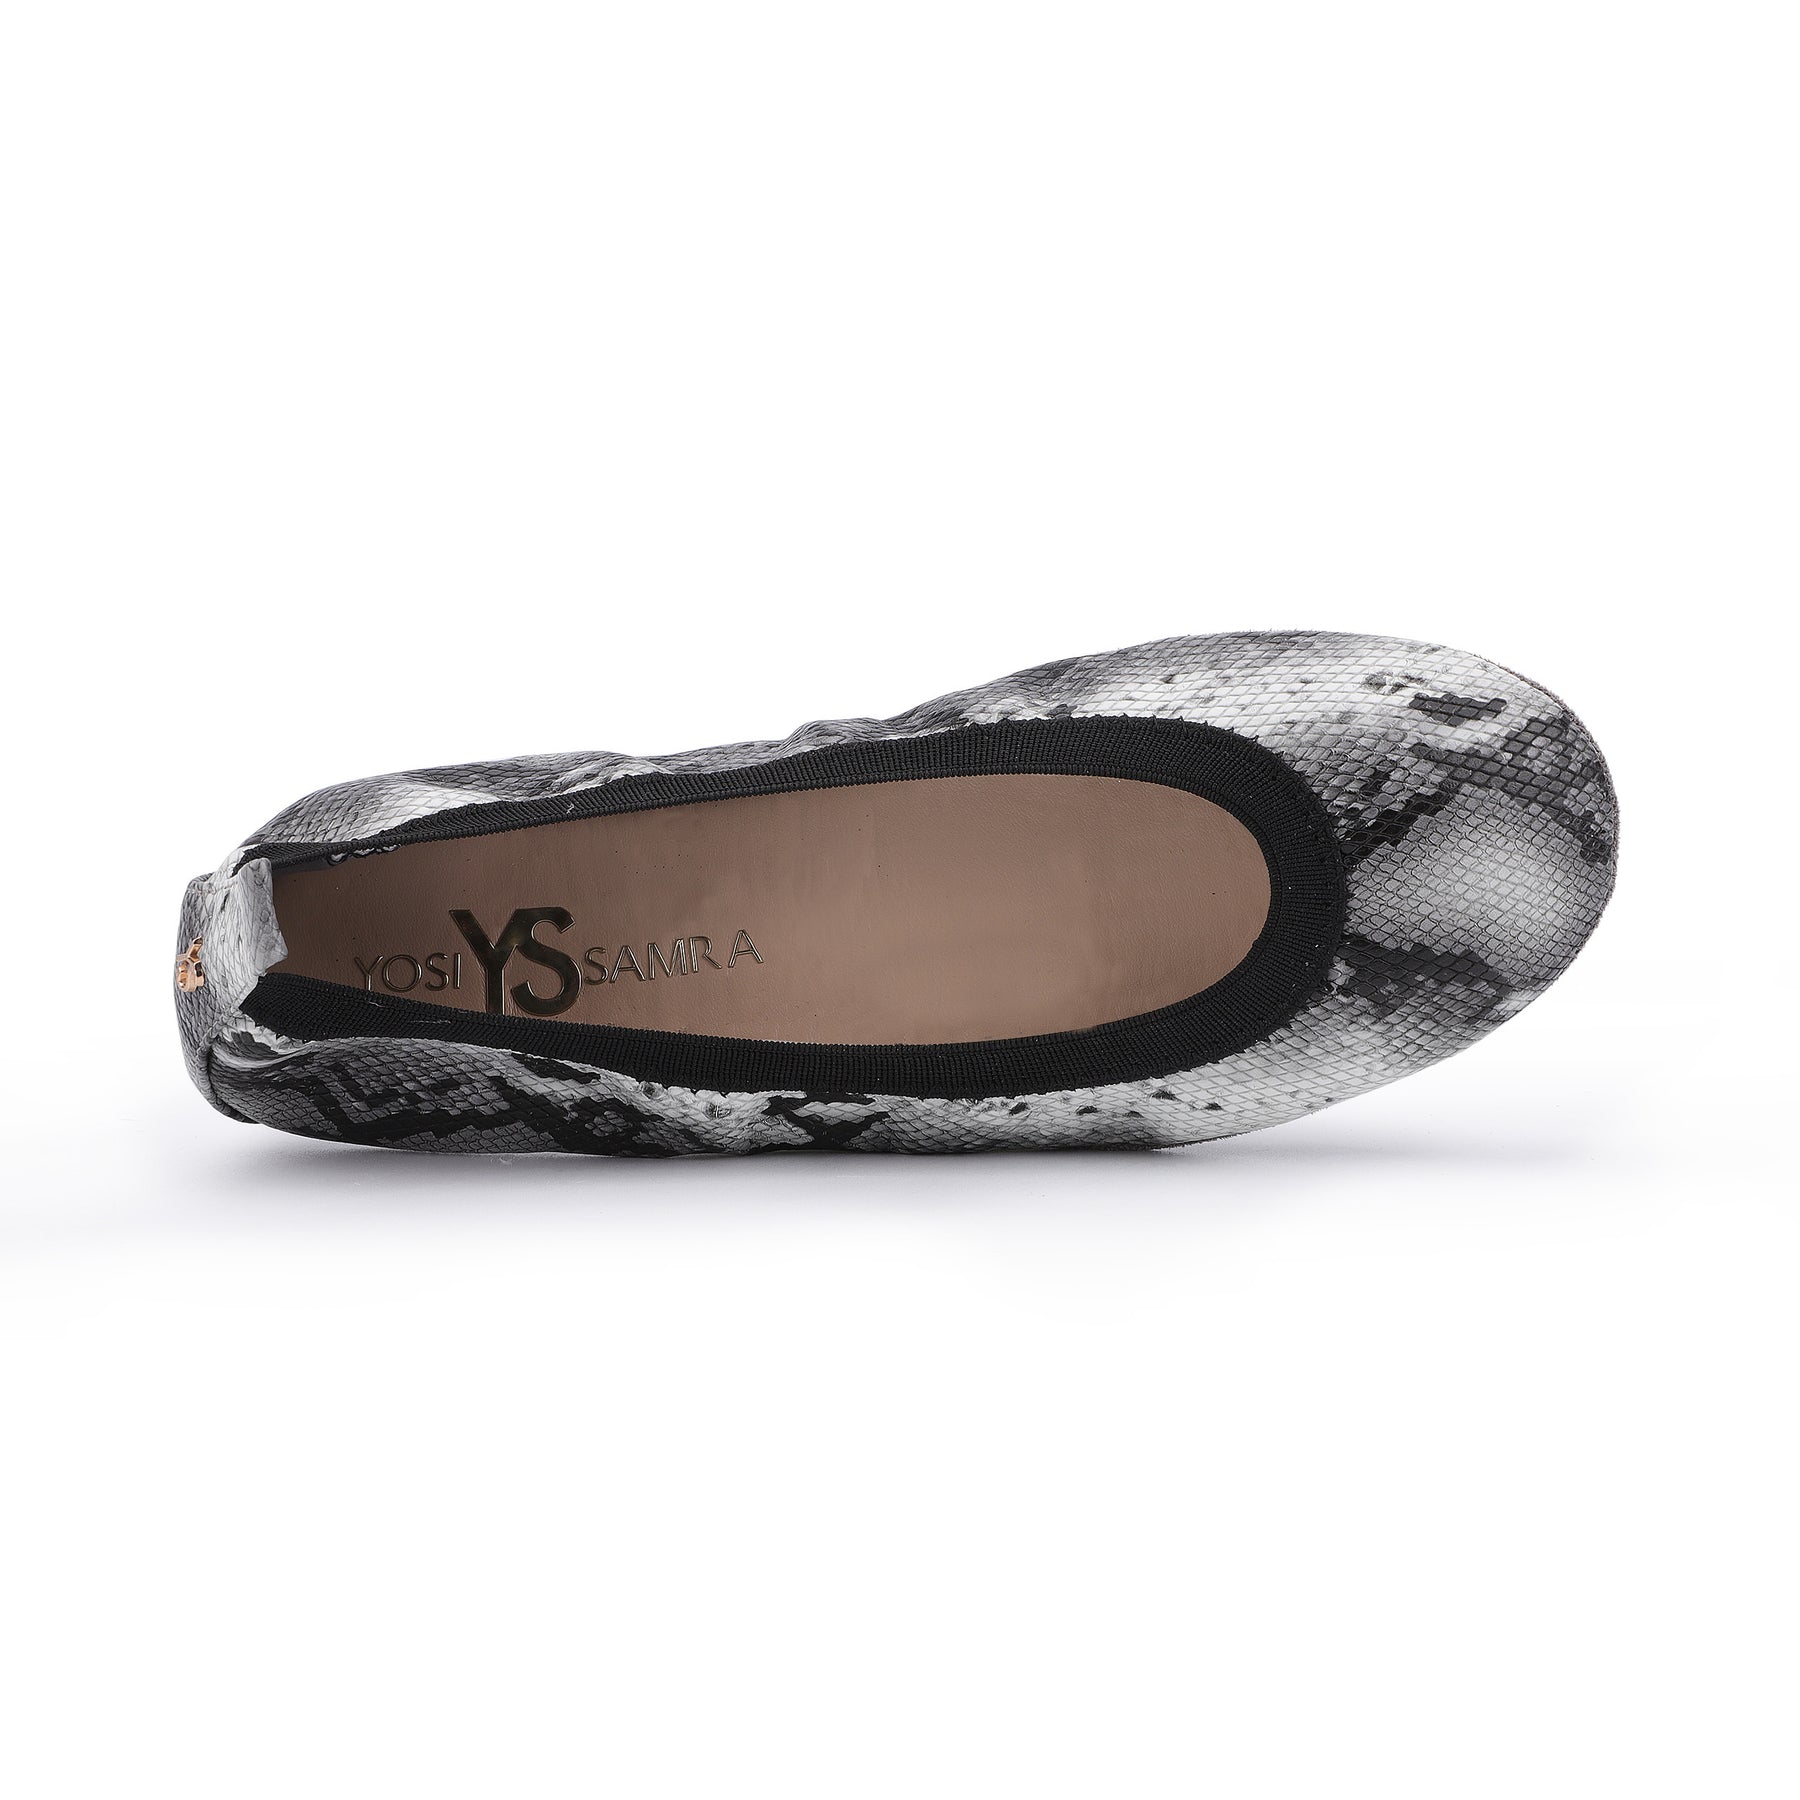 Samara Foldable Ballet Flat in Black & White Snake Print